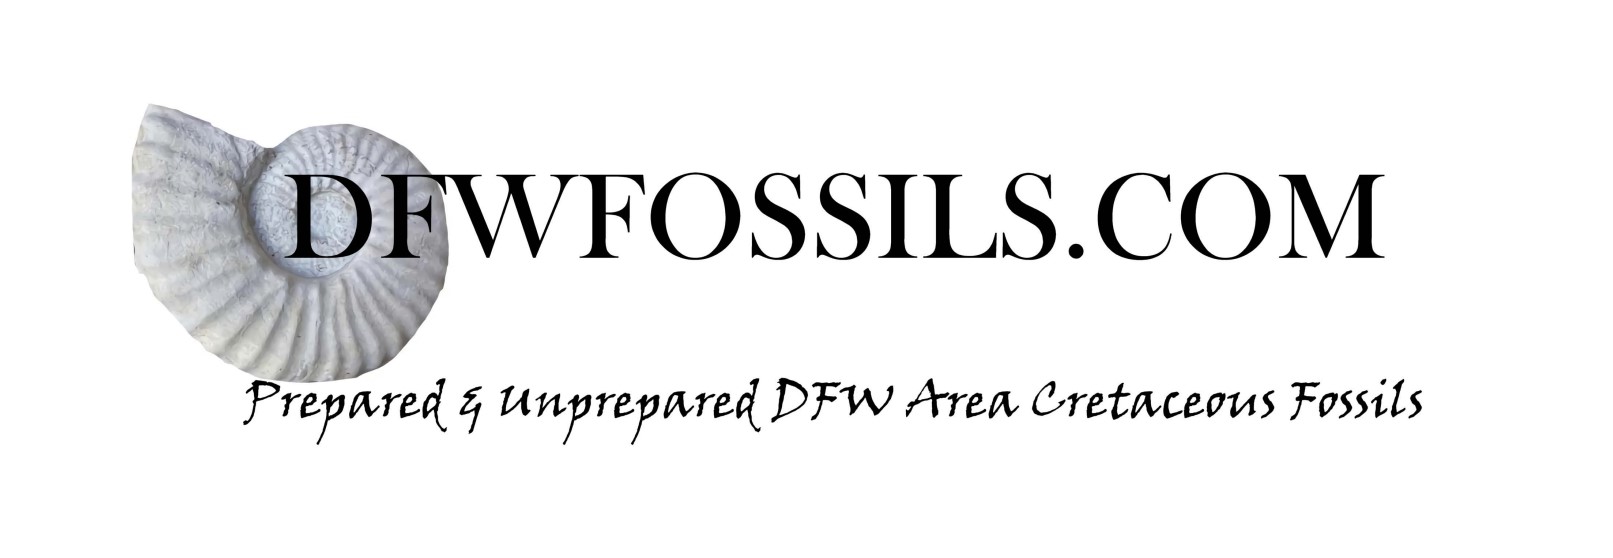 DFW Fossilslogo Banner edit pdf converted to jpg